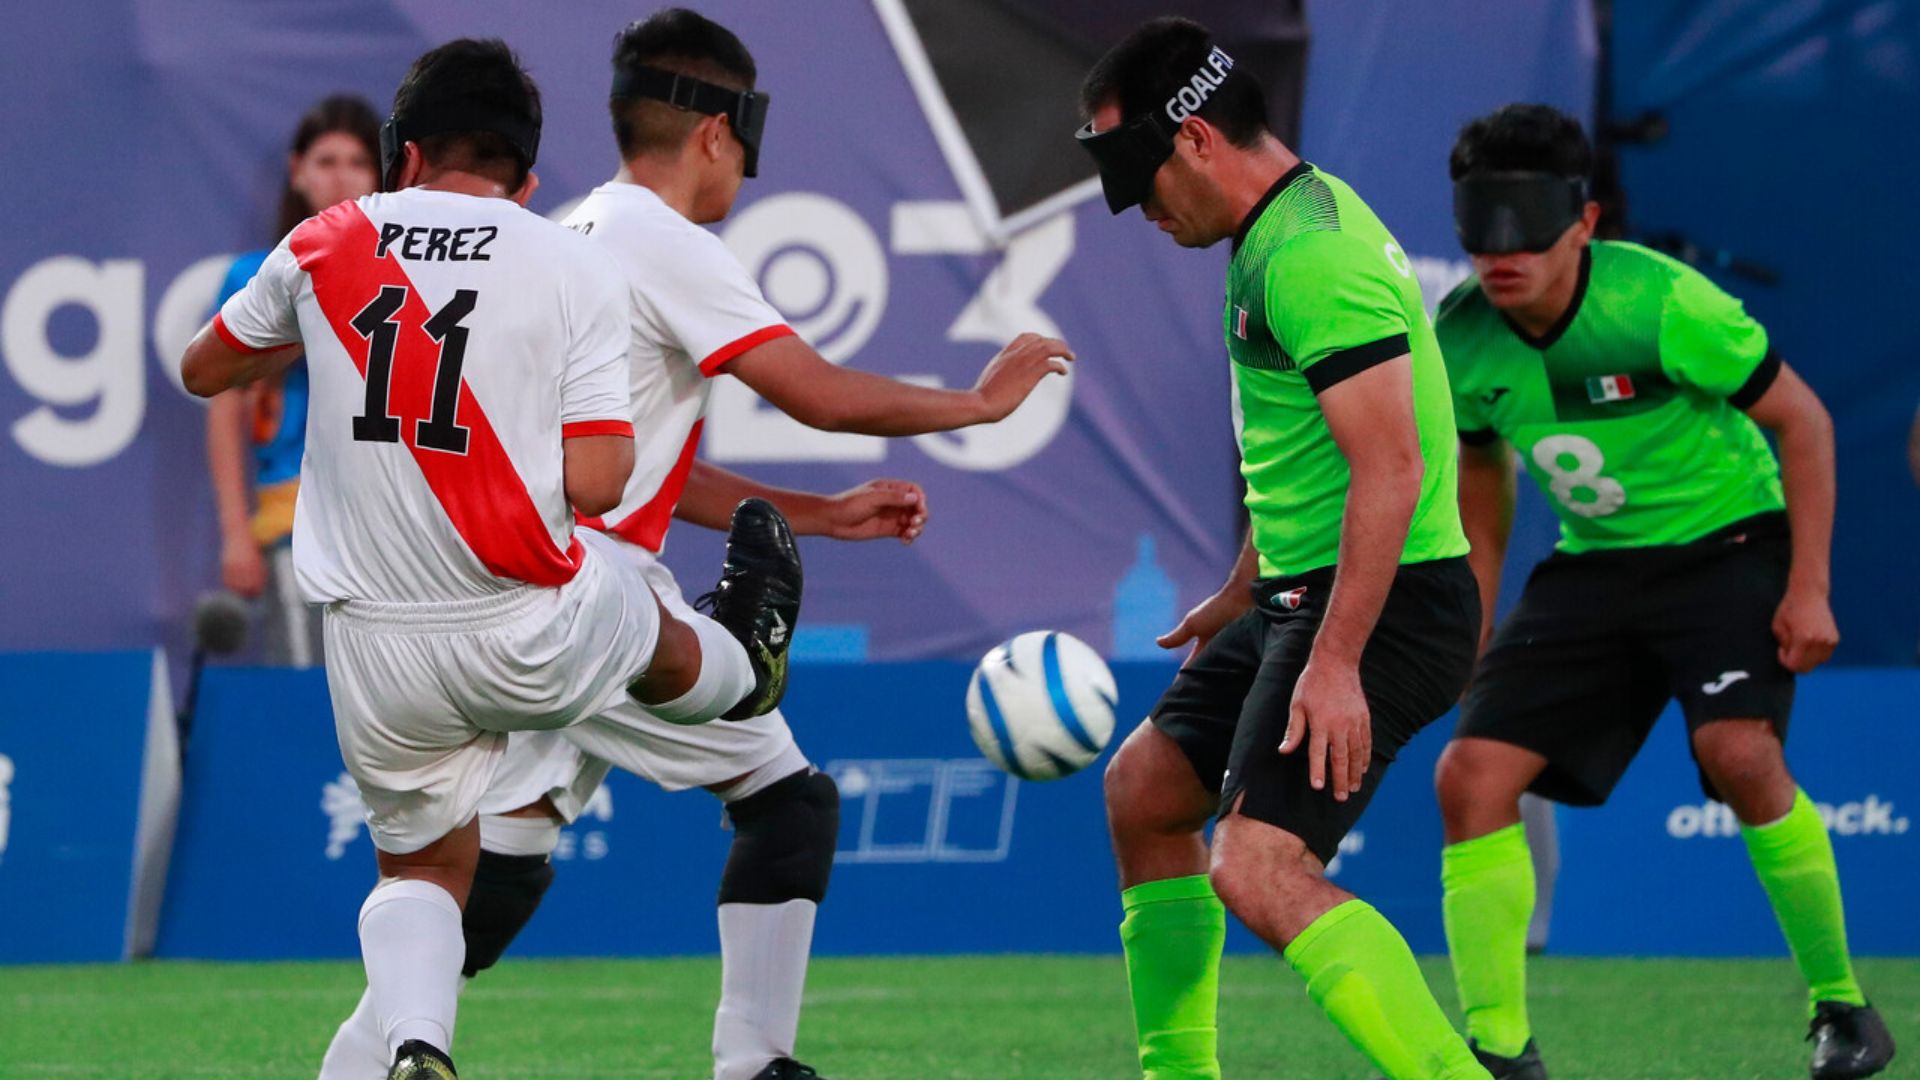 Fútbol para ciegos: Perú y México reparten puntos en un partidazo